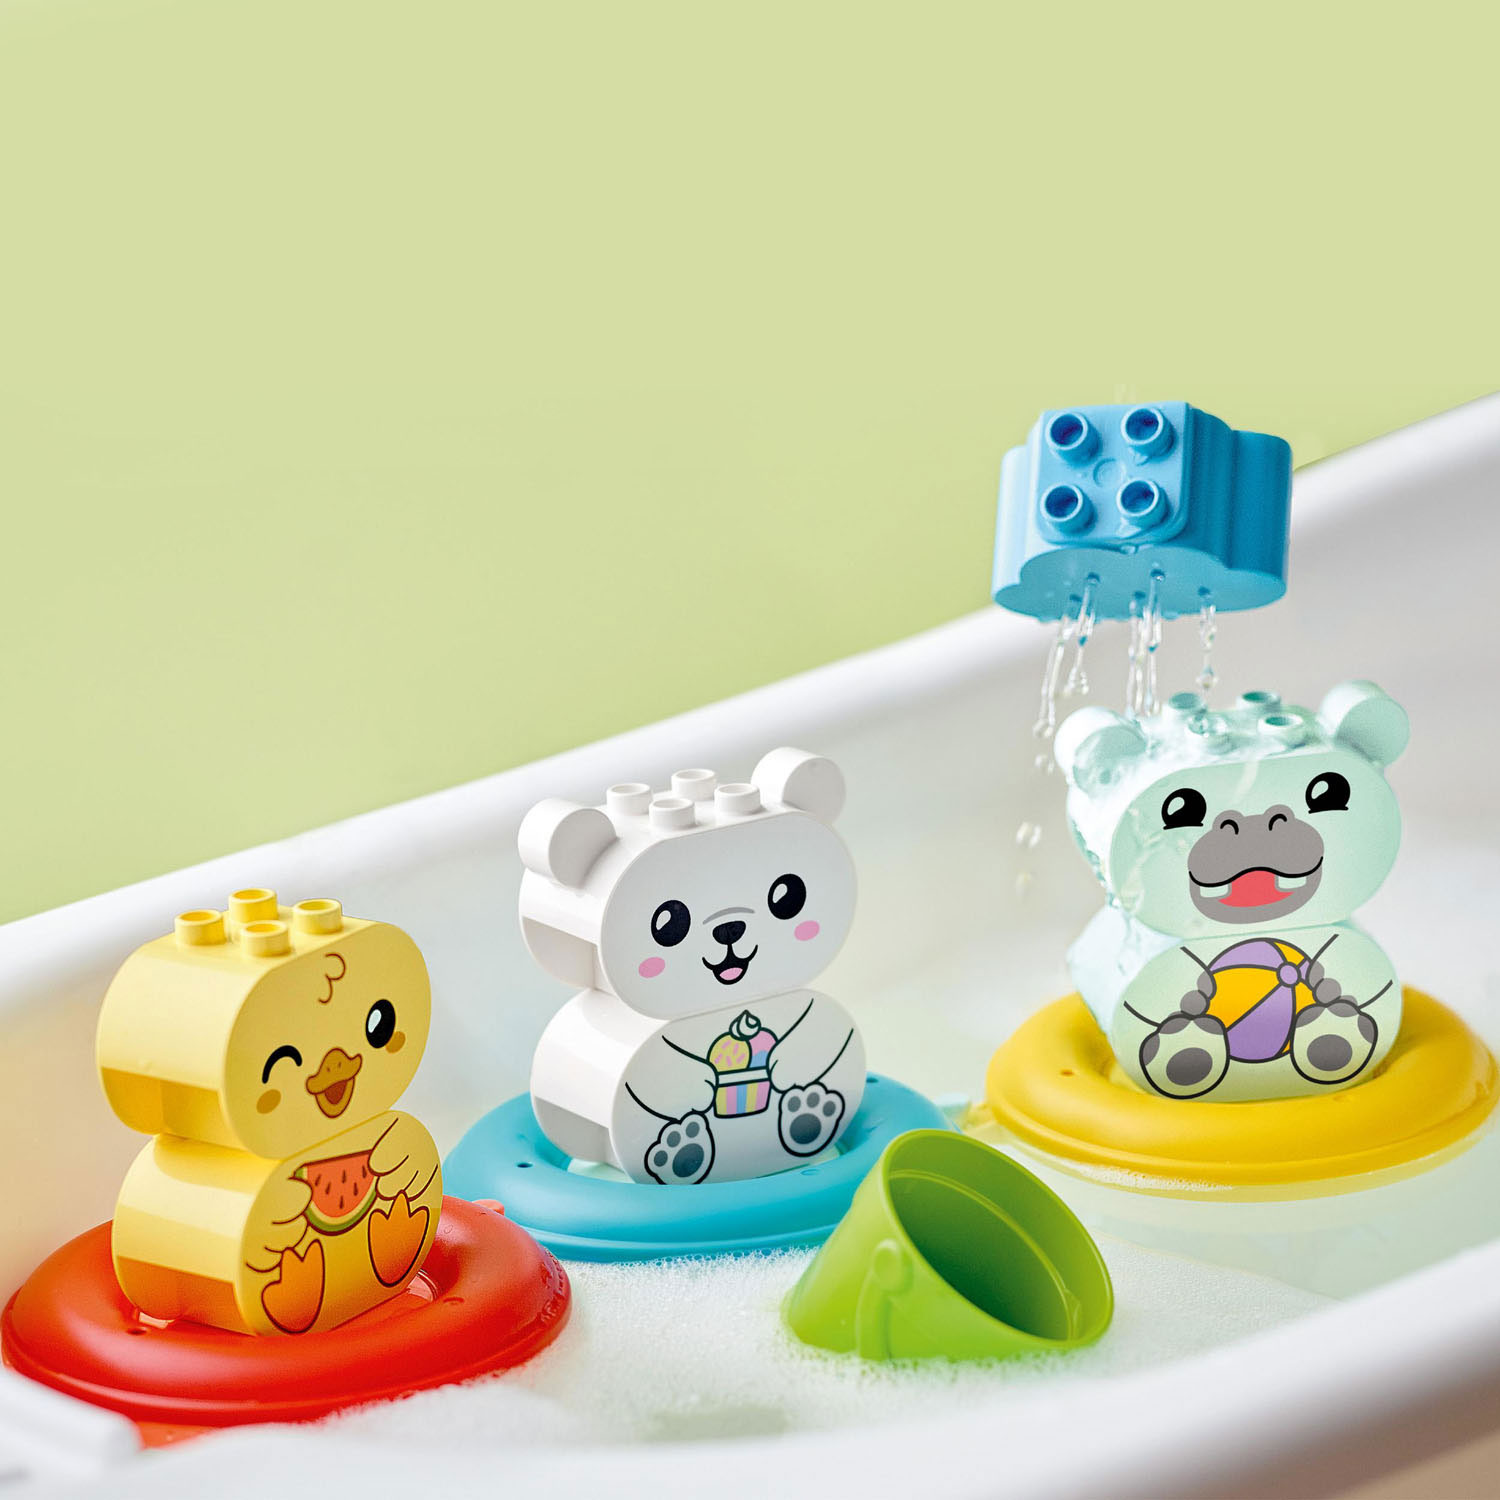 LEGO Duplo 10965 Les plaisirs du bain : le train animal flottant